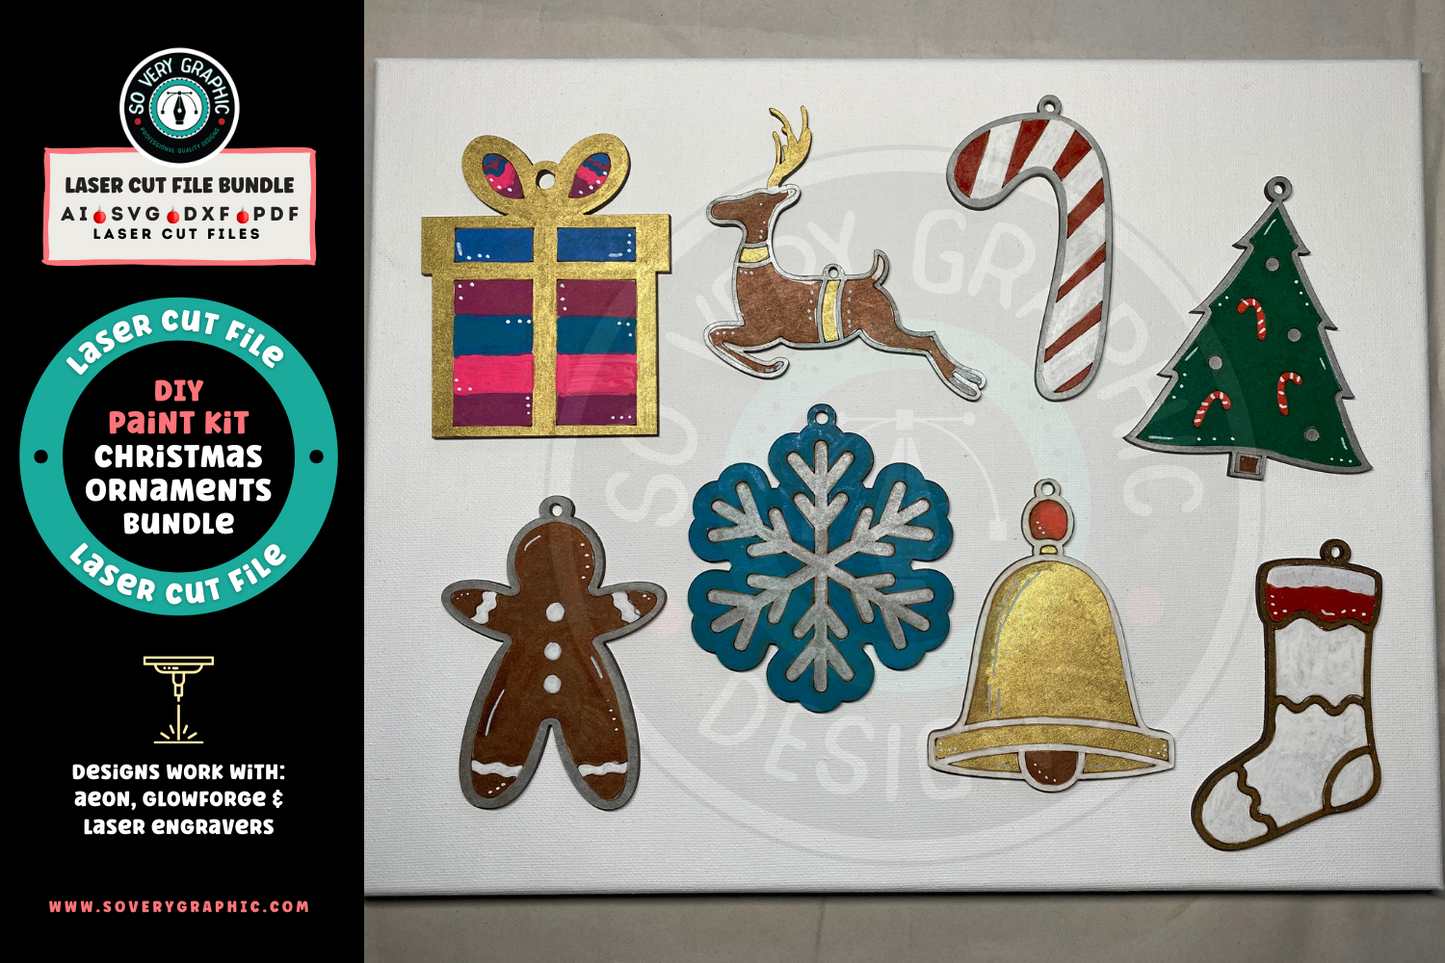 DIY Paint Kit Christmas Ornaments Laser Cut File Bundle